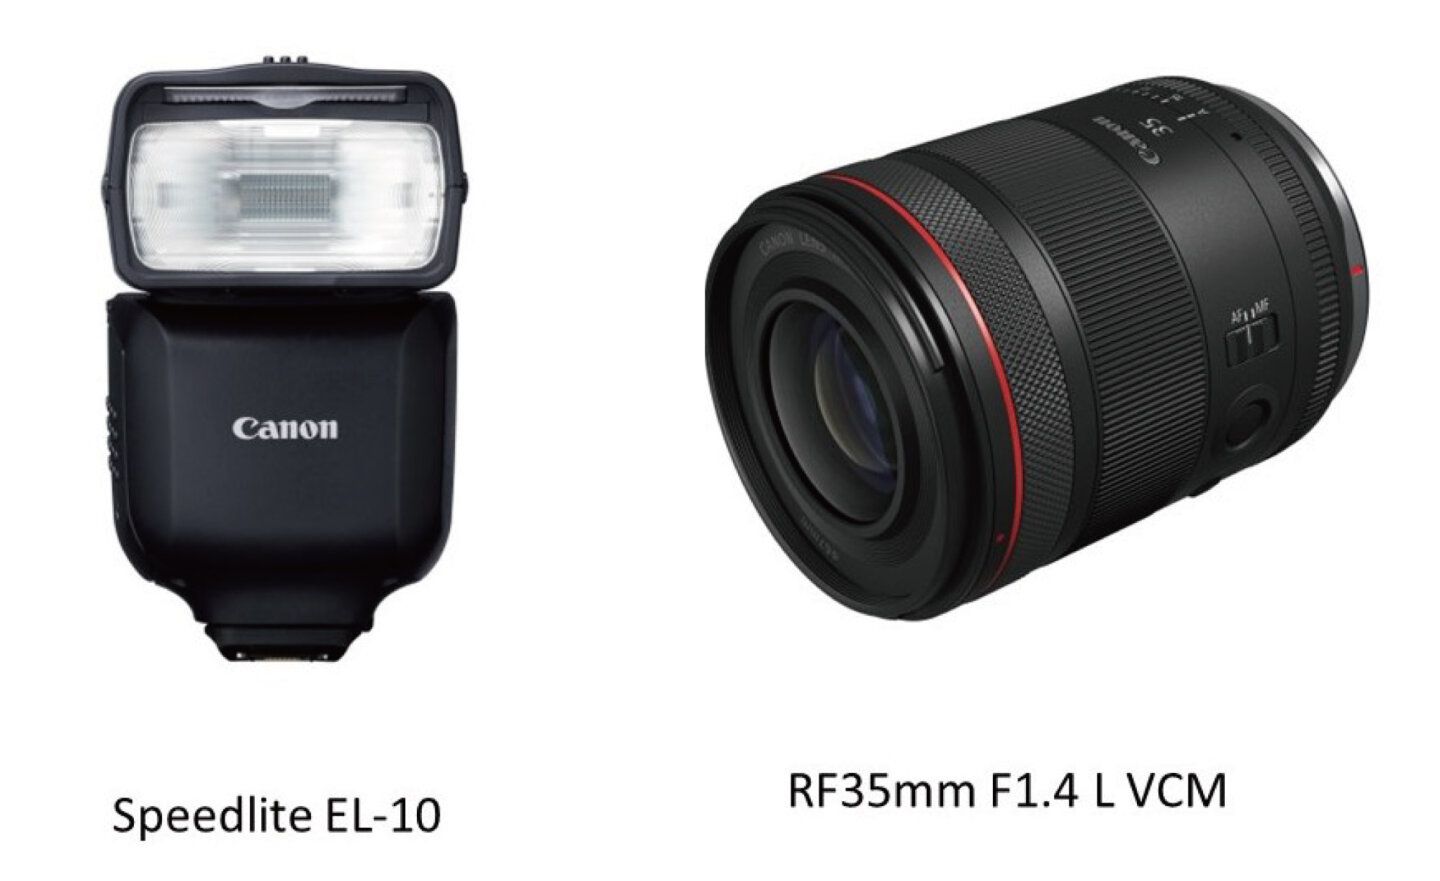 Canon推出全新RF35mm F1.4 L VCM鏡頭和Speedlite EL-10閃光燈